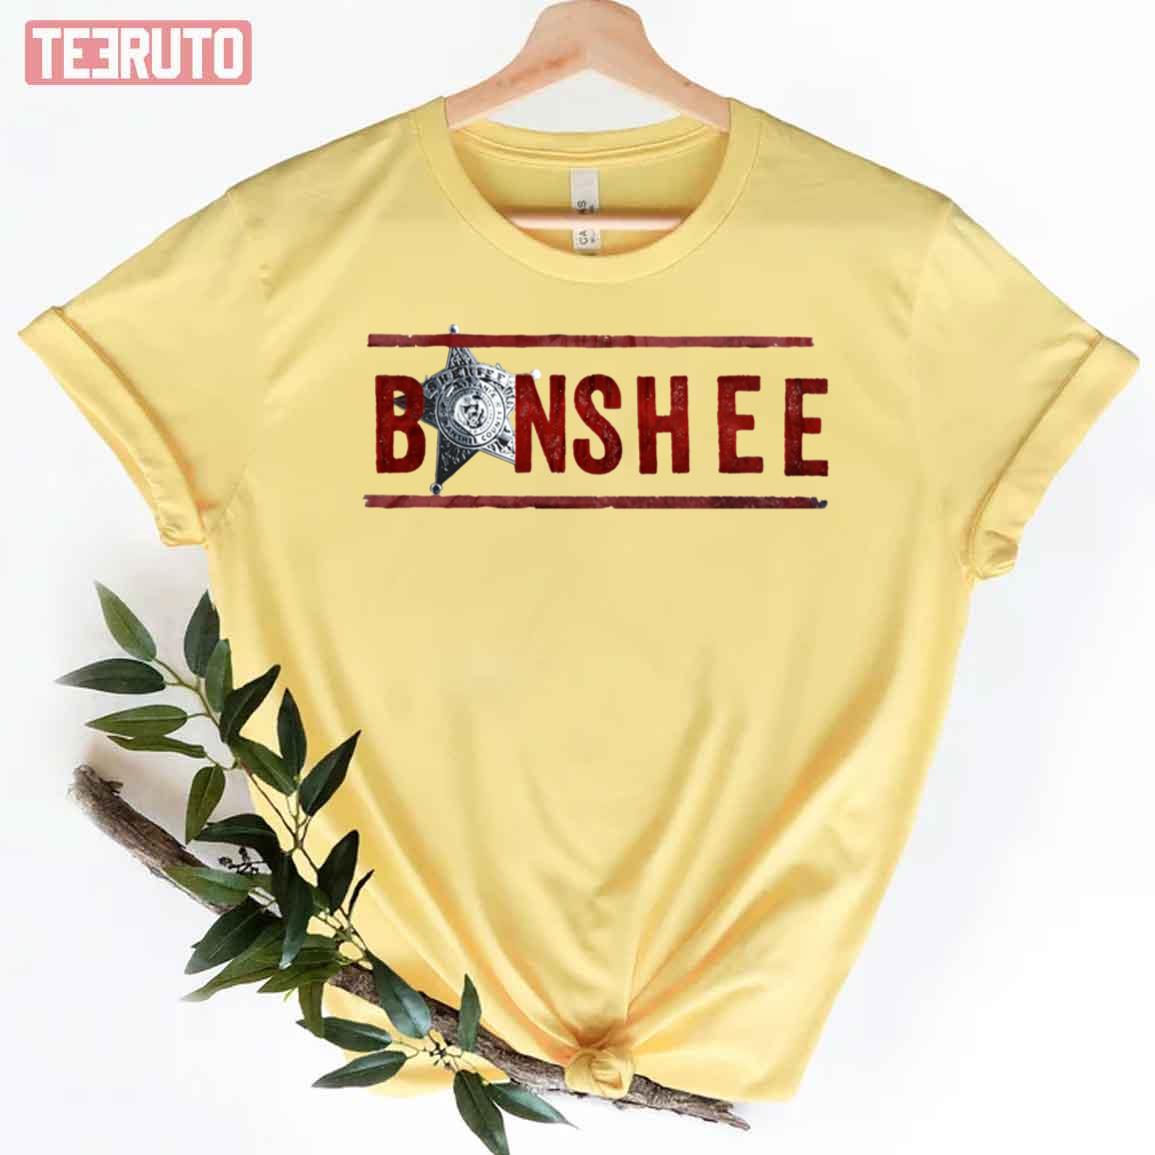 Banshee American Action Drama Tv Series Unisex T-Shirt